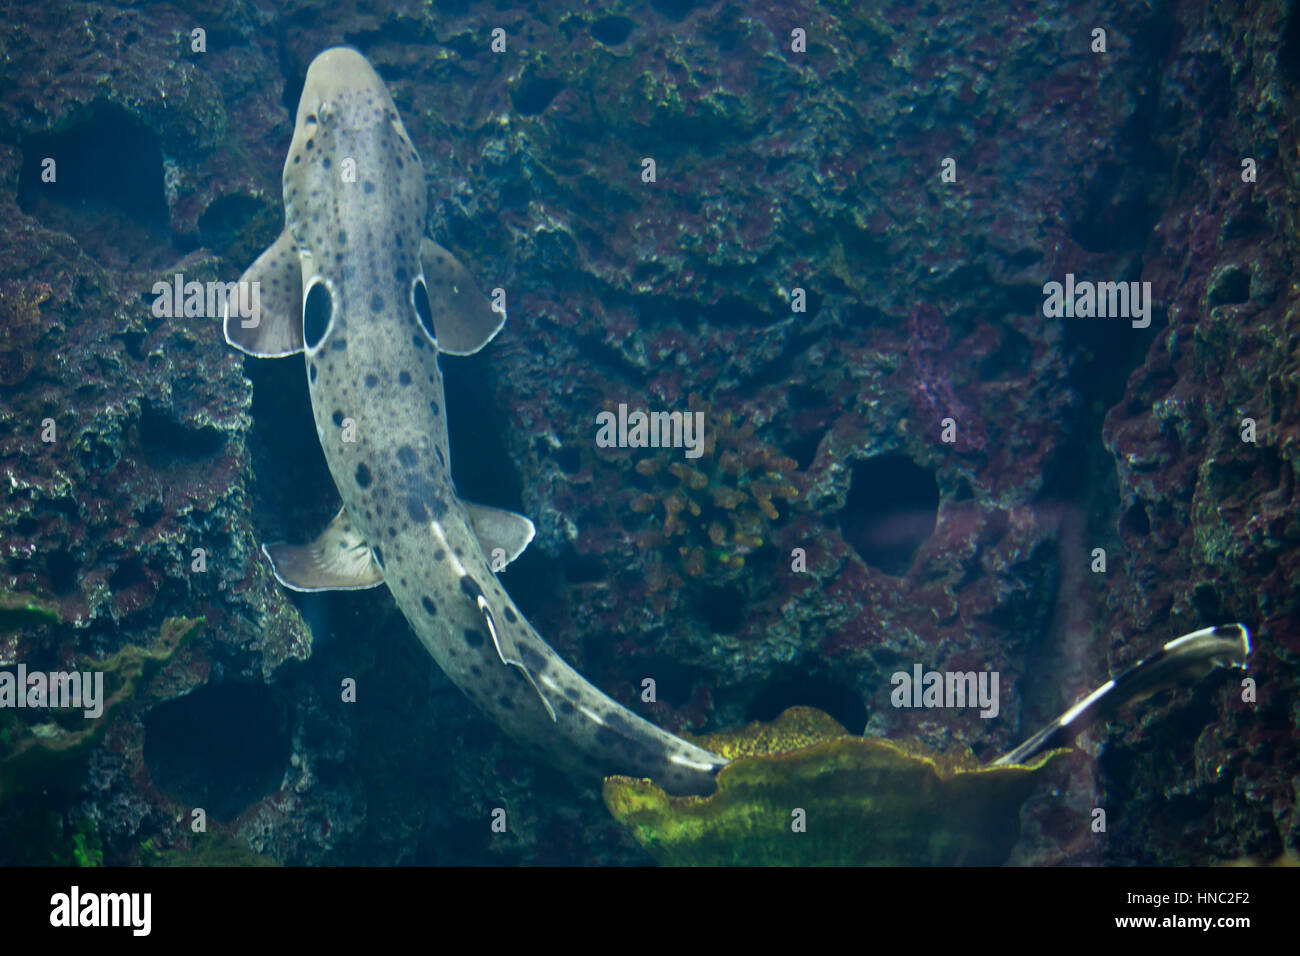 Epaulette shark (Hemiscyllium ocellatum). Marine fish. Stock Photo